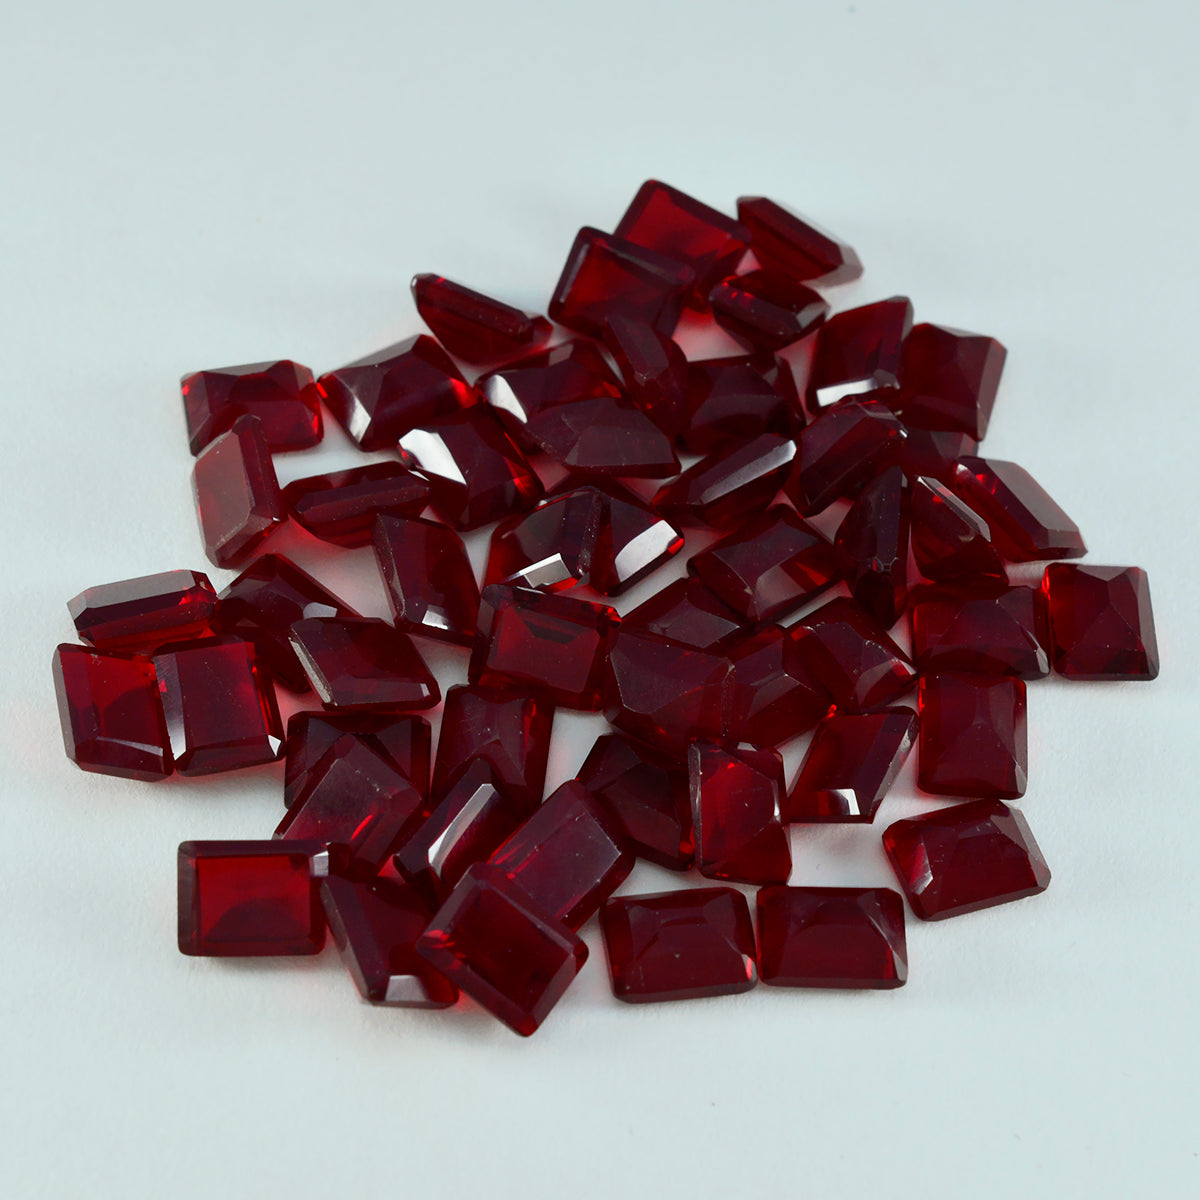 Riyogems 1 Stück roter Rubin mit CZ, facettiert, 7 x 9 mm, Achteckform, Stein von ausgezeichneter Qualität